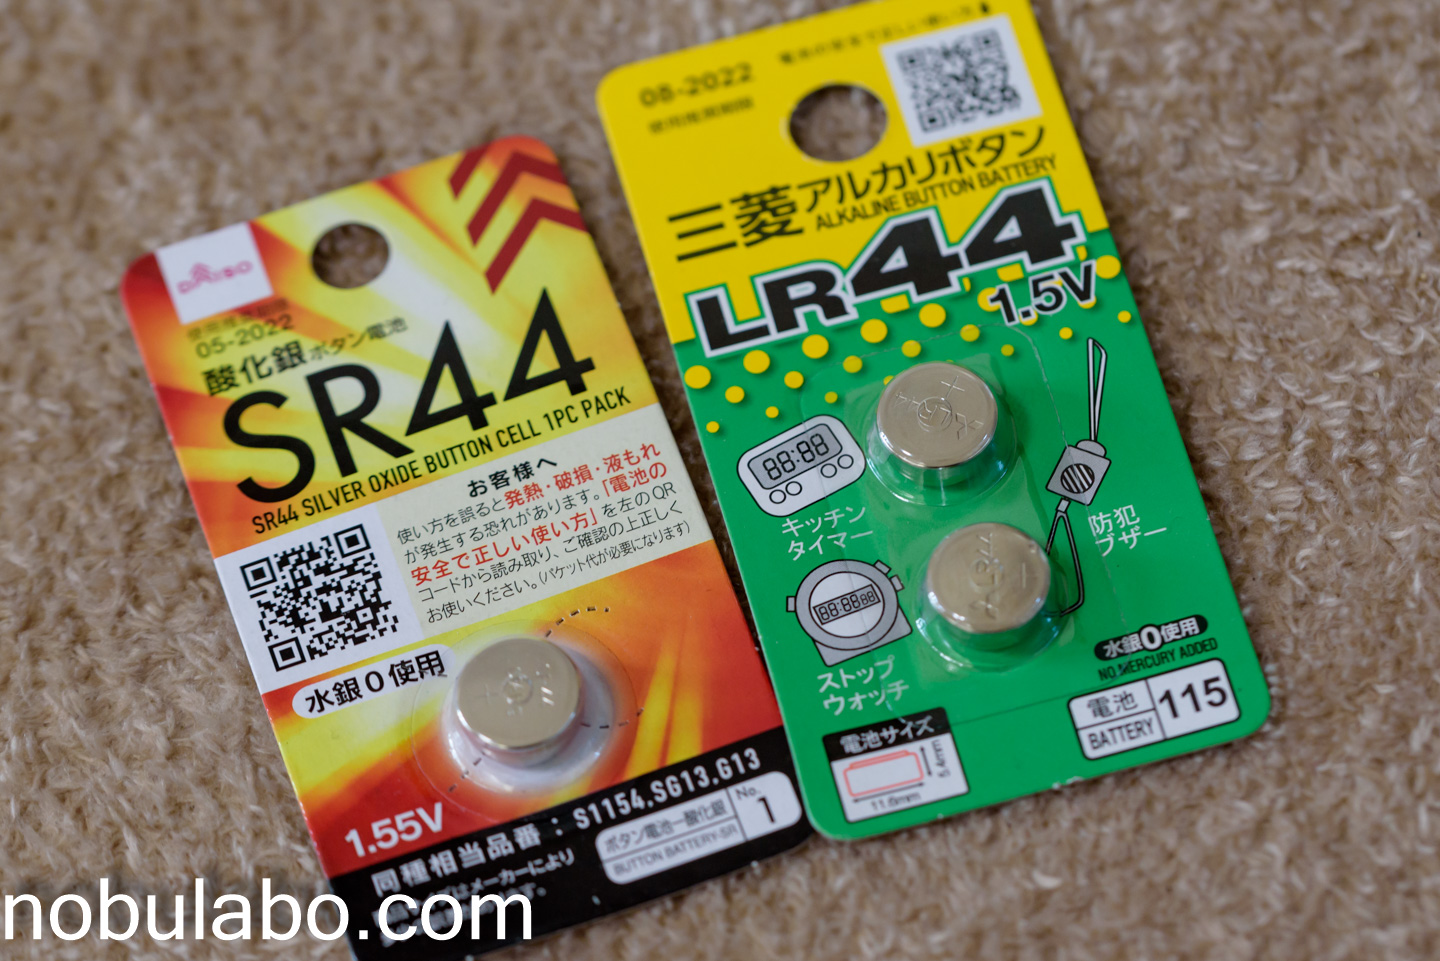 100円ショップで購入したボタン電池（LR44とSR44）